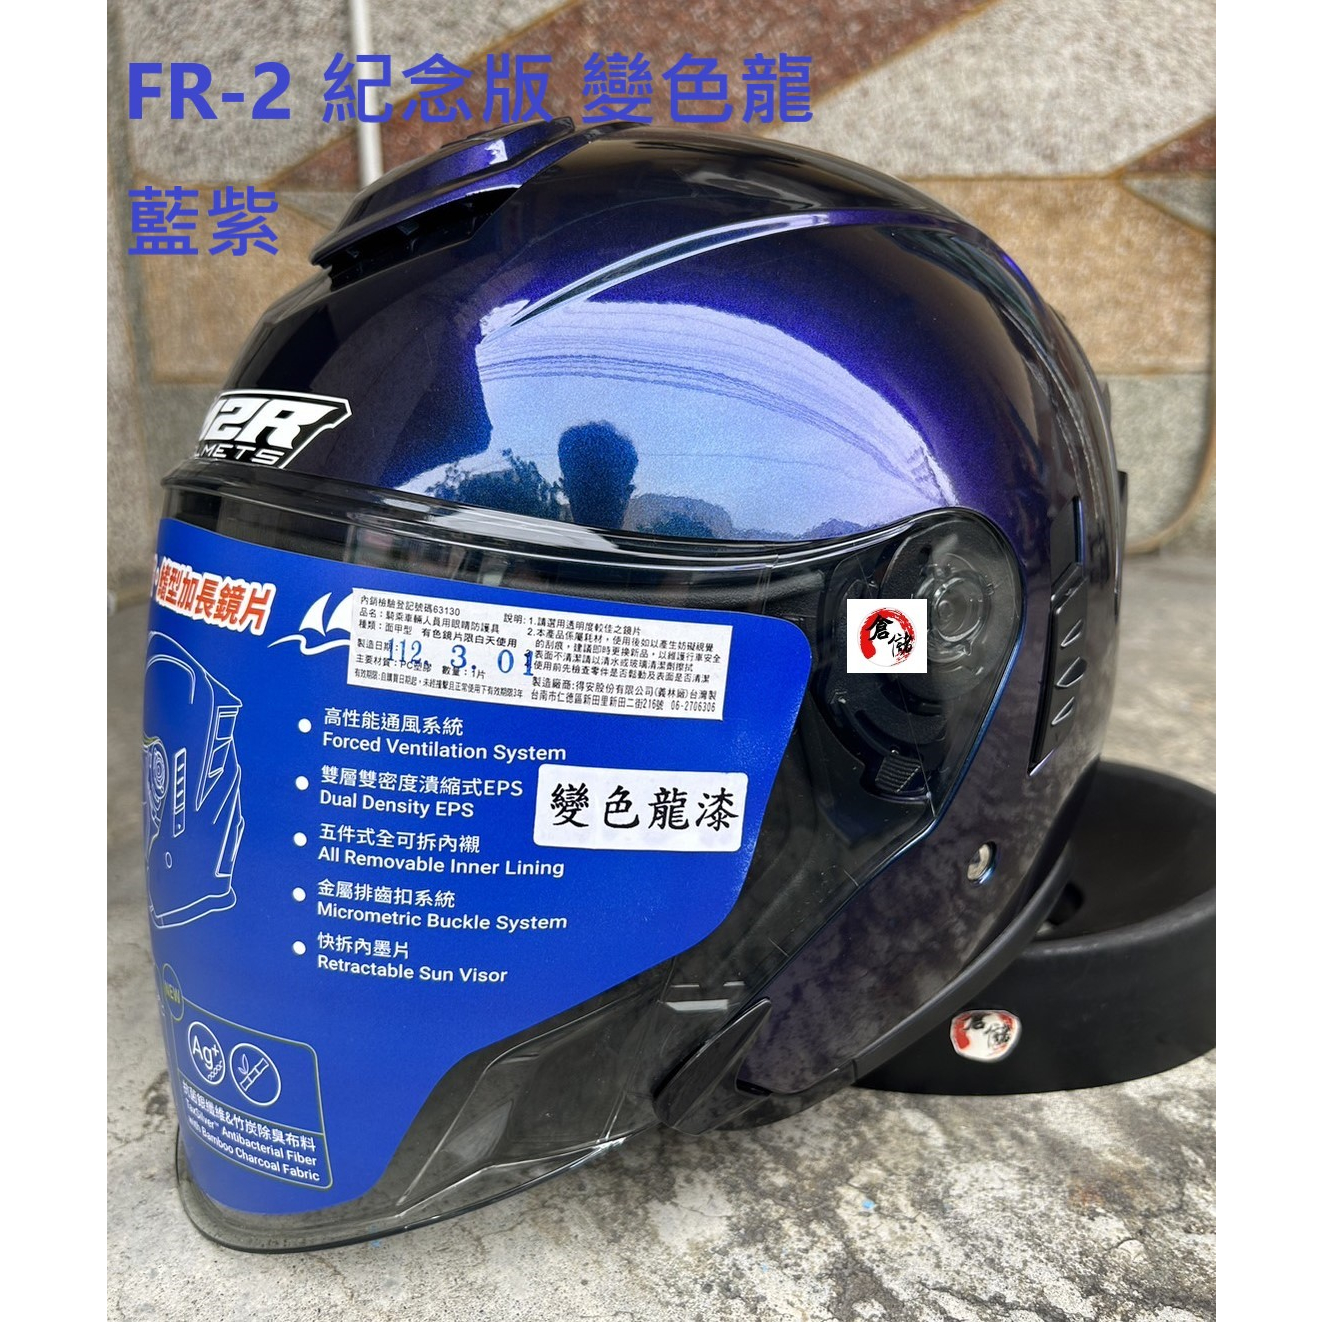 FR-2 紀念版 變色龍 藍紫 FR2 全新鏡片設計 內鏡片 M2R 台中倉儲安全帽